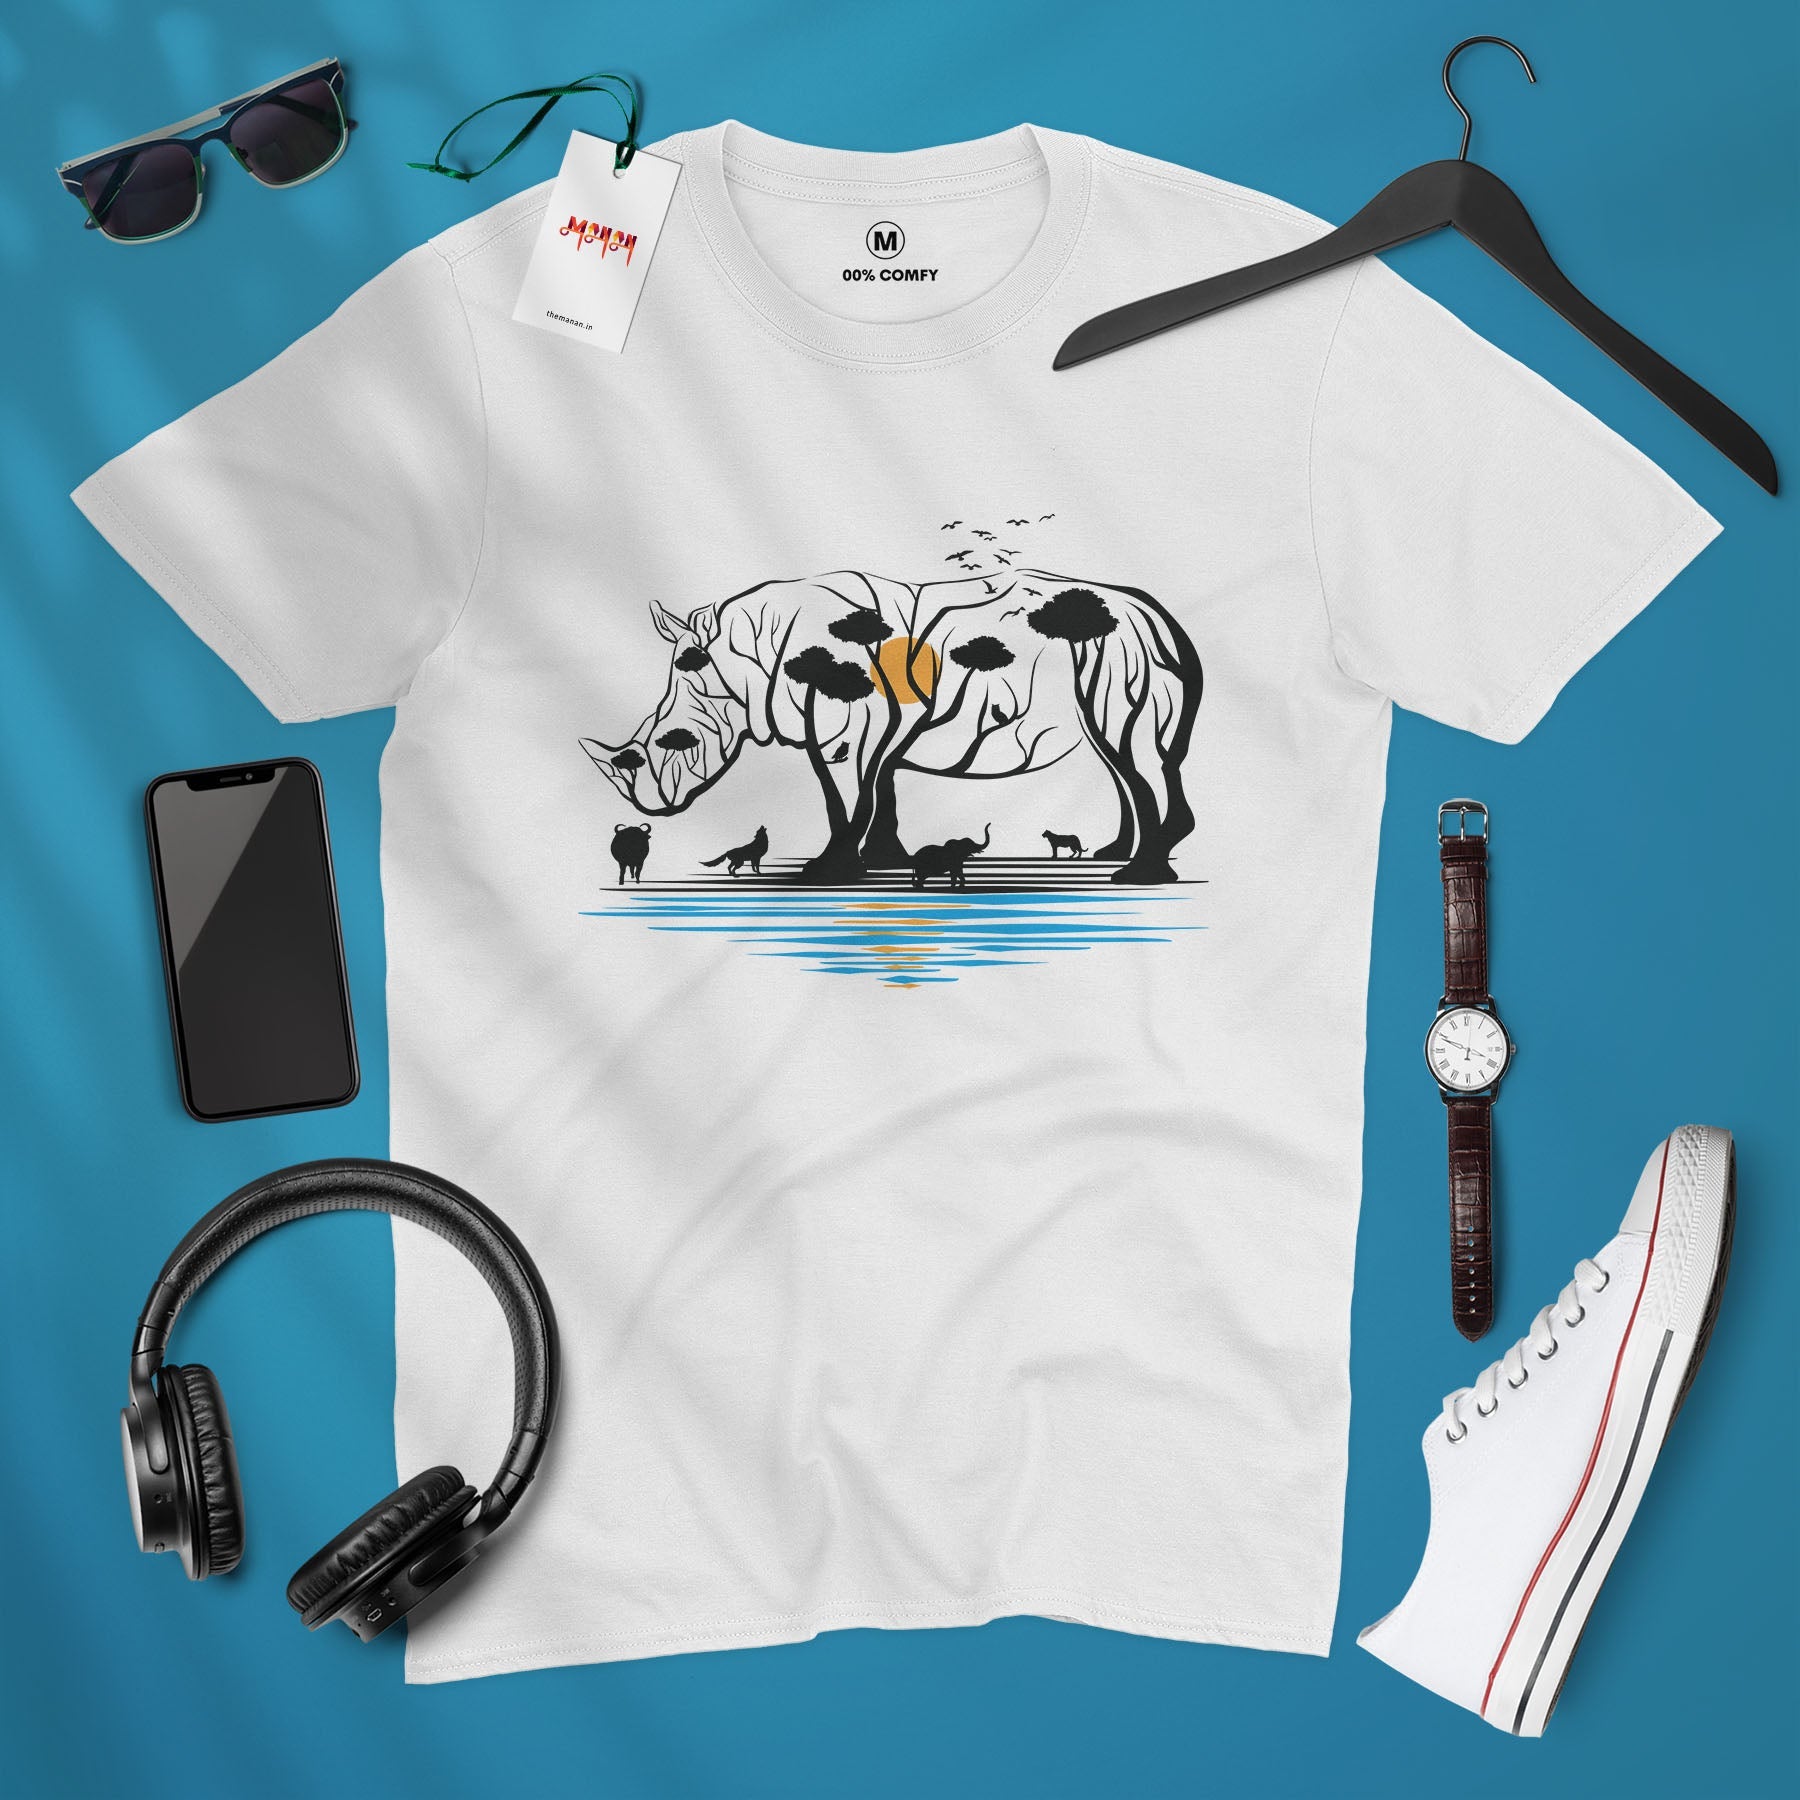 Kaziranga - Unisex T-shirt